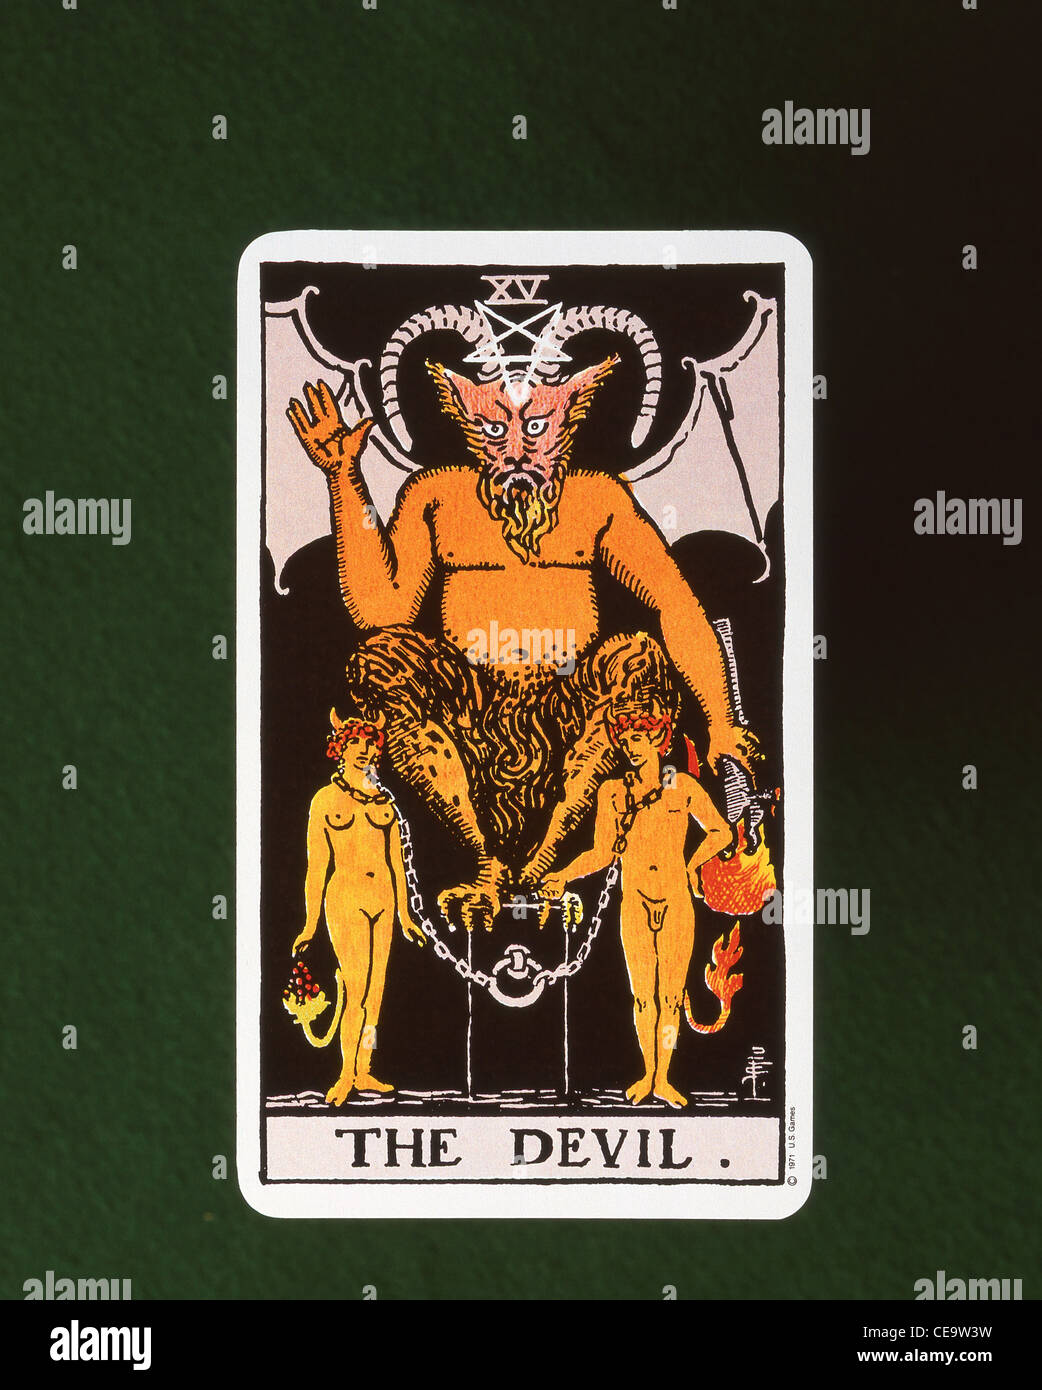 Il Diavolo (XV) quindicesima Tarocchi carta vincente su feltro tabella scheda, England, Regno Unito Foto Stock